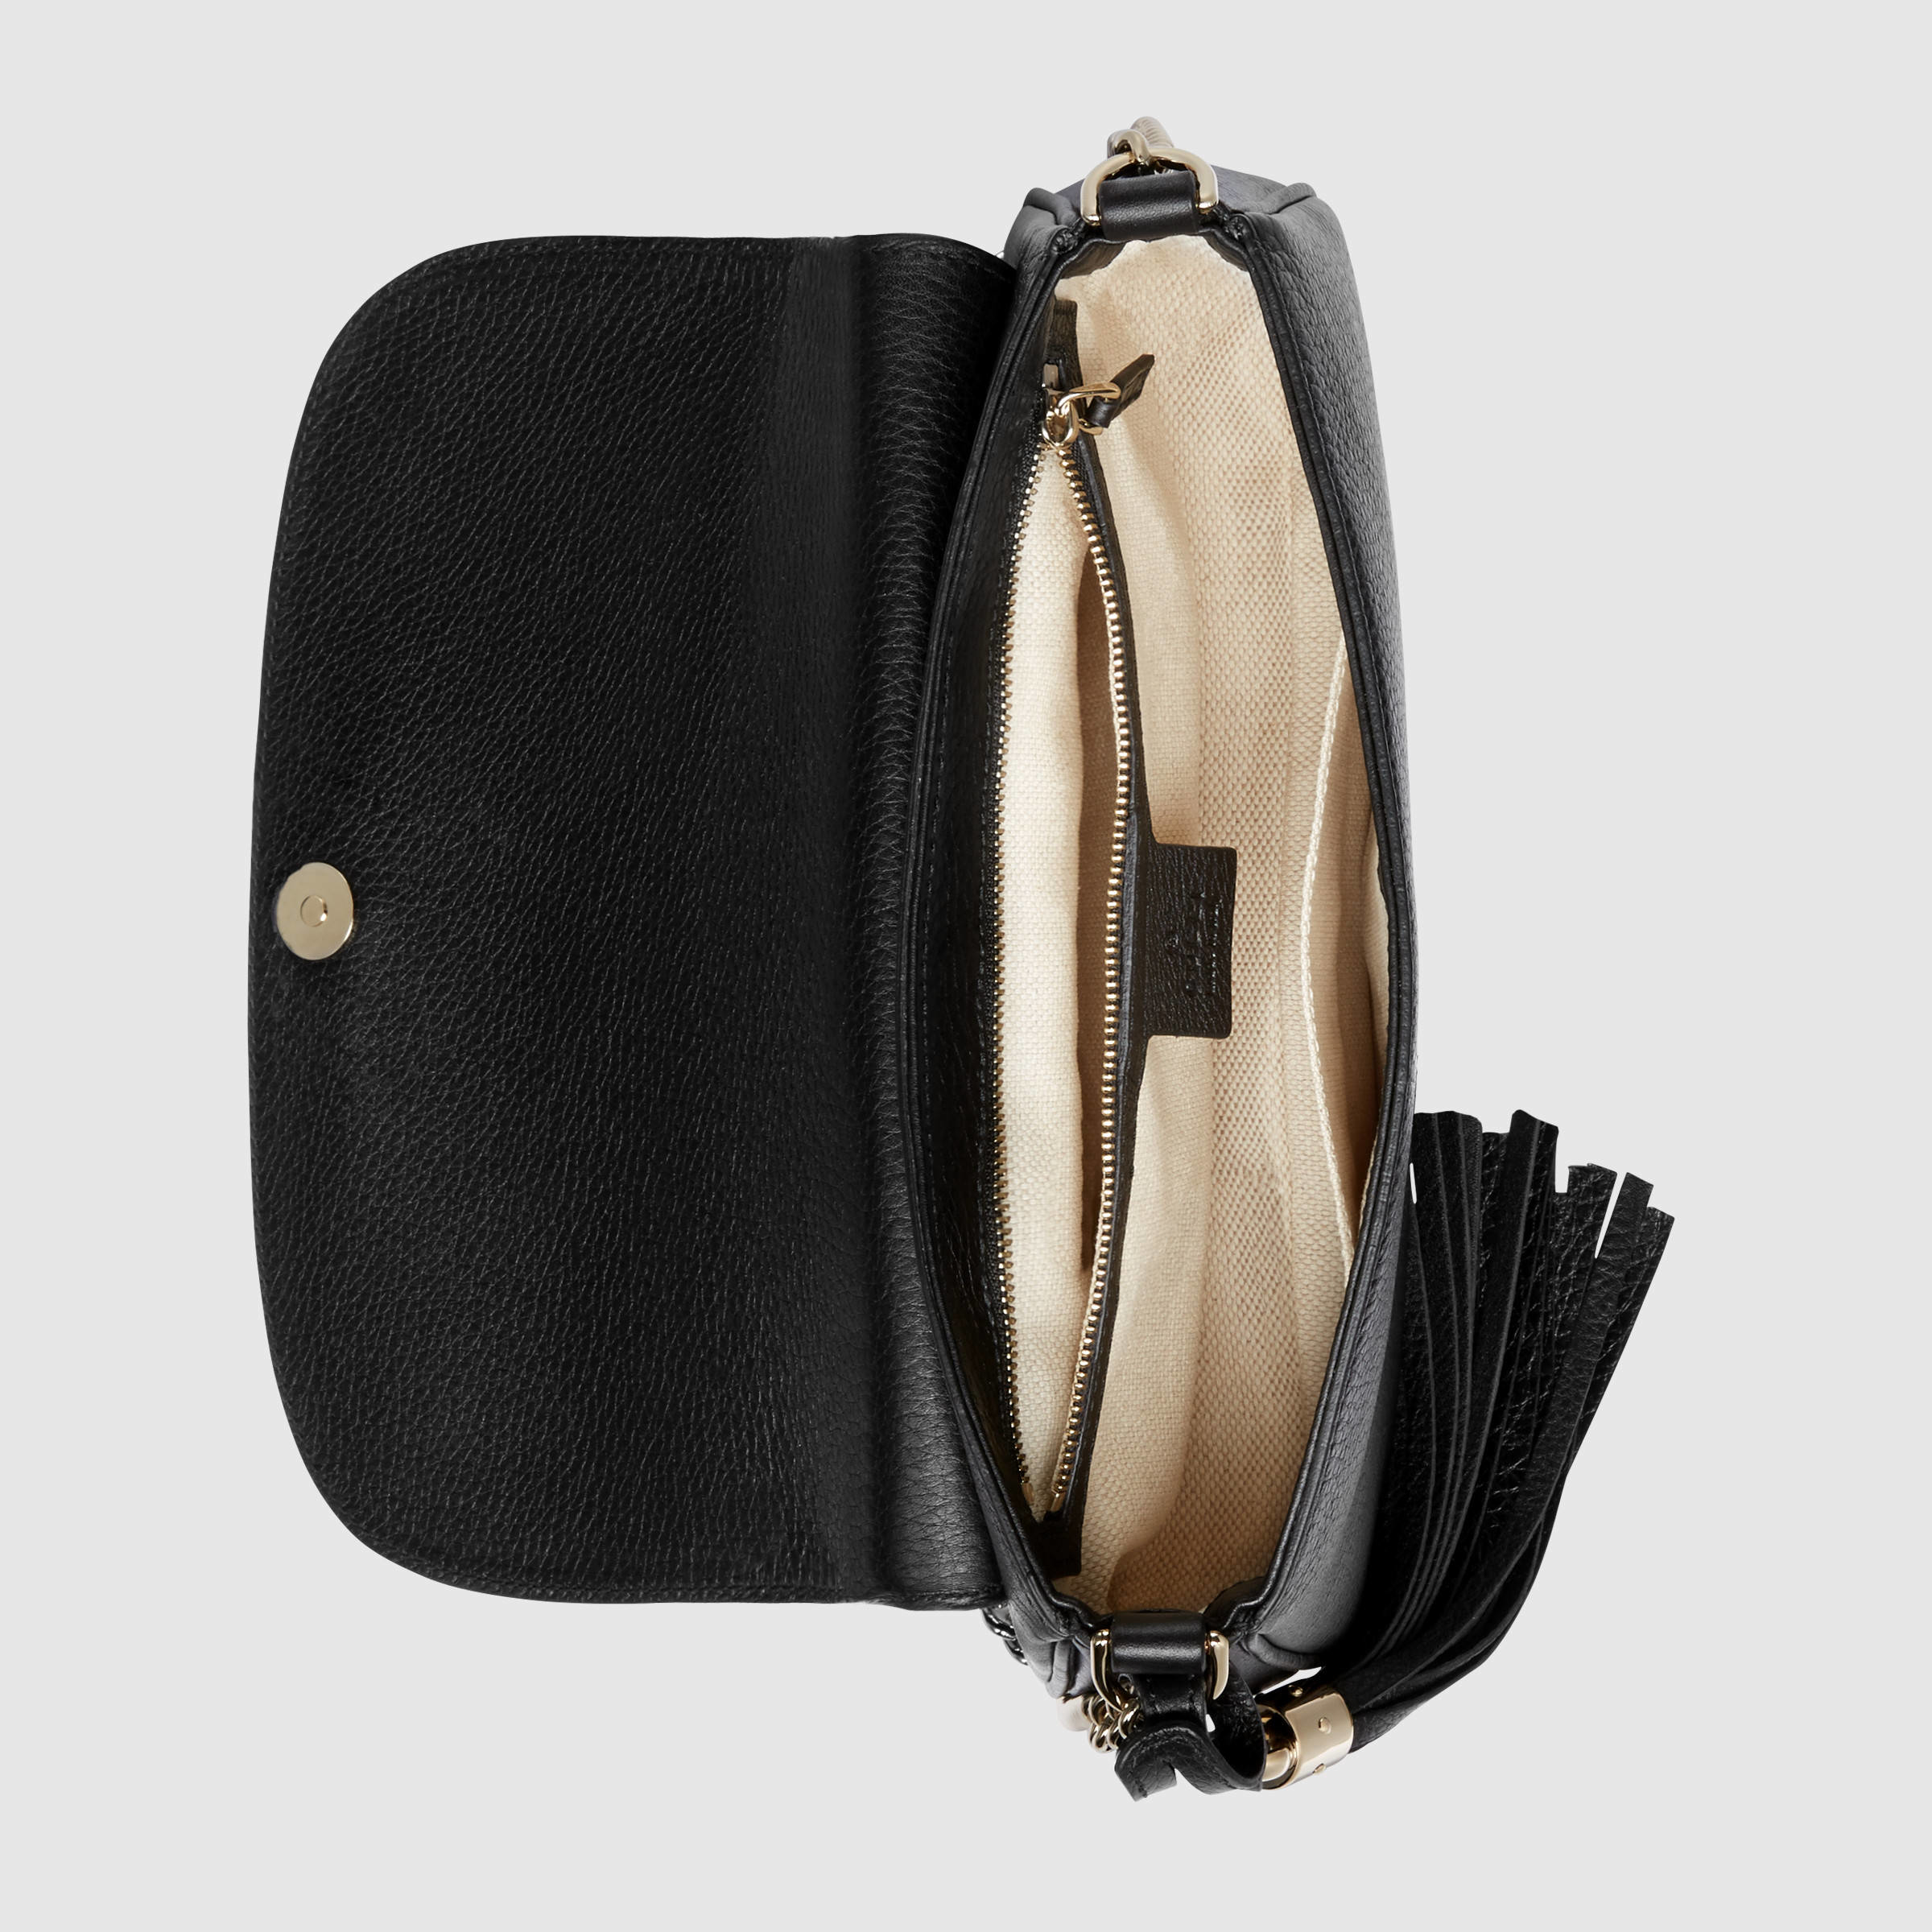 Gucci Soho Leather Shoulder Bag in Black Leather (Black) - Lyst